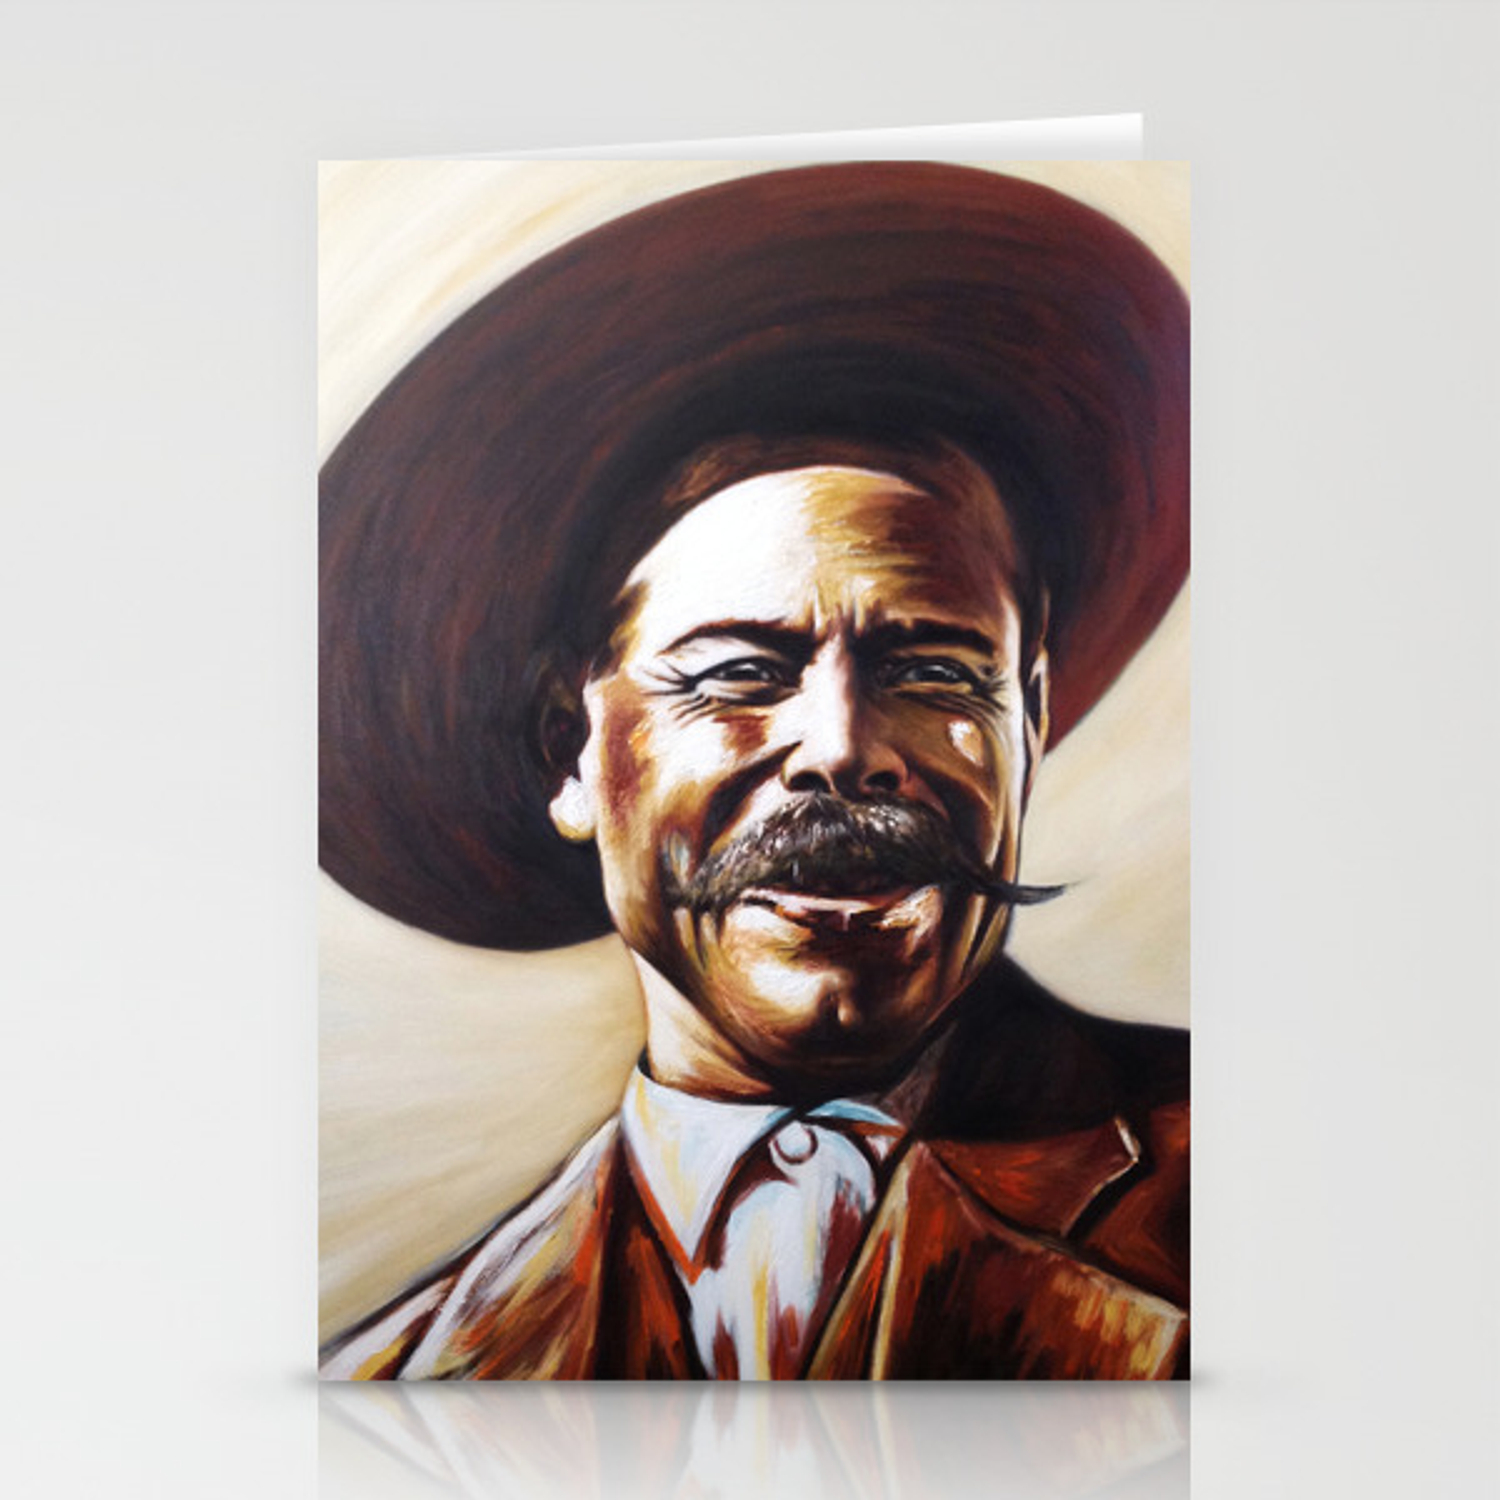 Pancho Villa Wallpapers